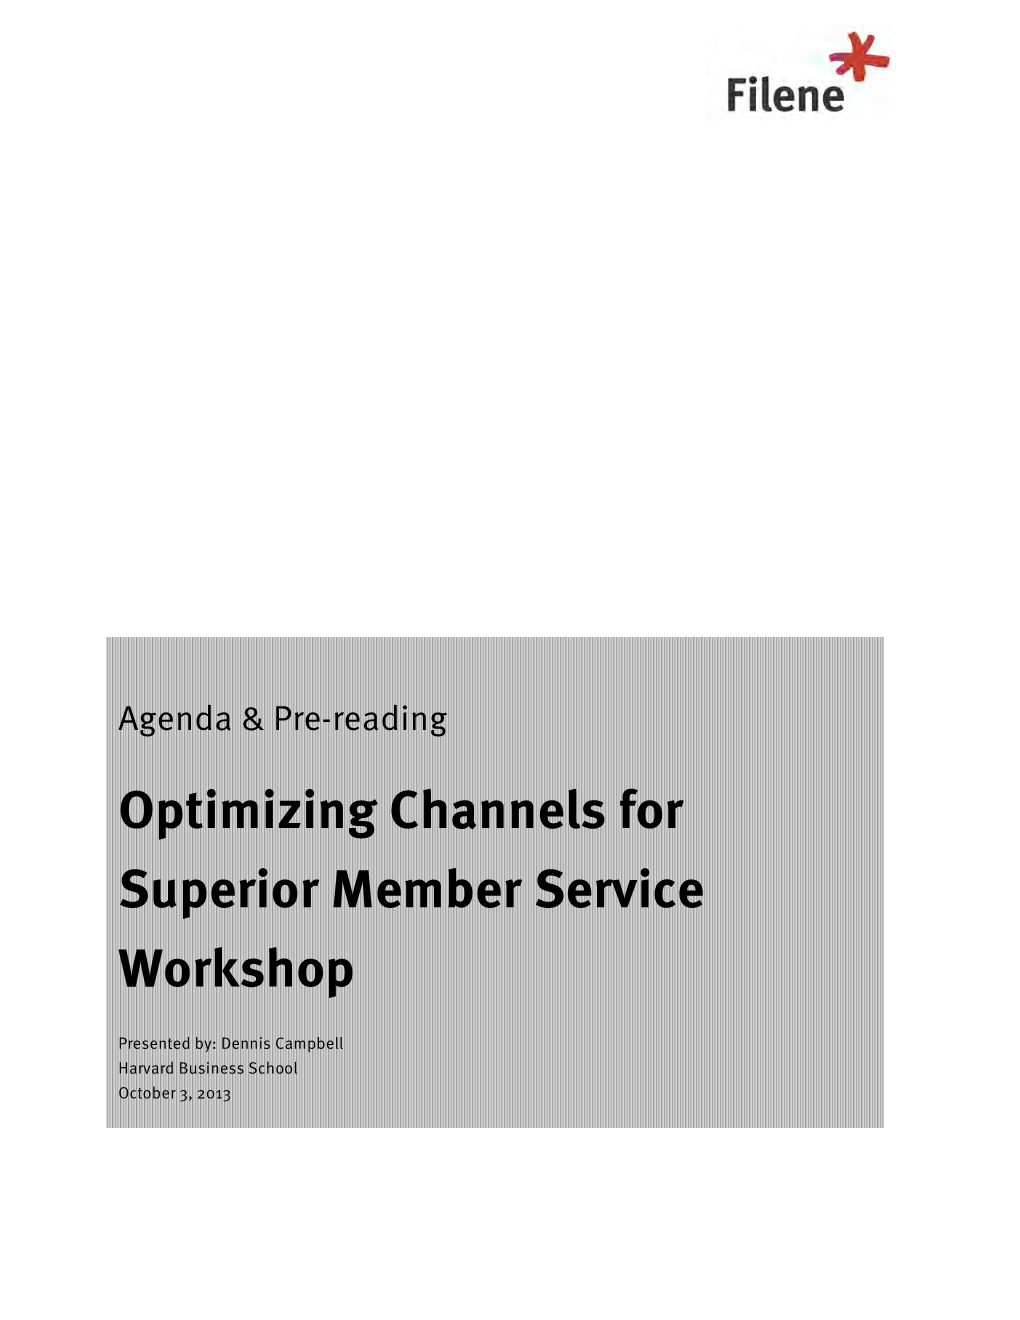 Optimizing Channels for Superior Member Service Workshop